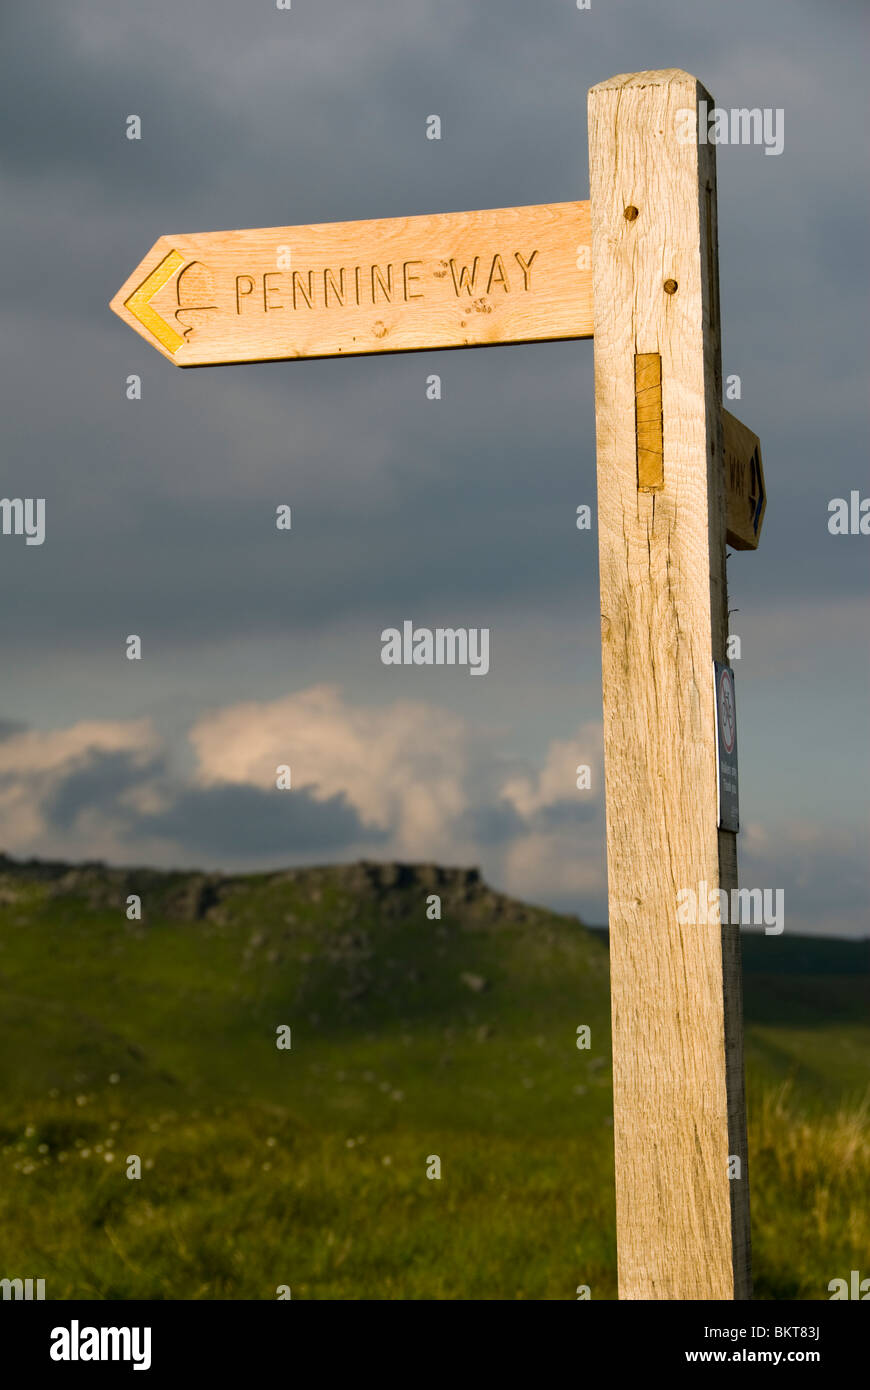 Sentier Pennine Way signe à Edale, Peak District, Derbyshire, Angleterre, RU Banque D'Images